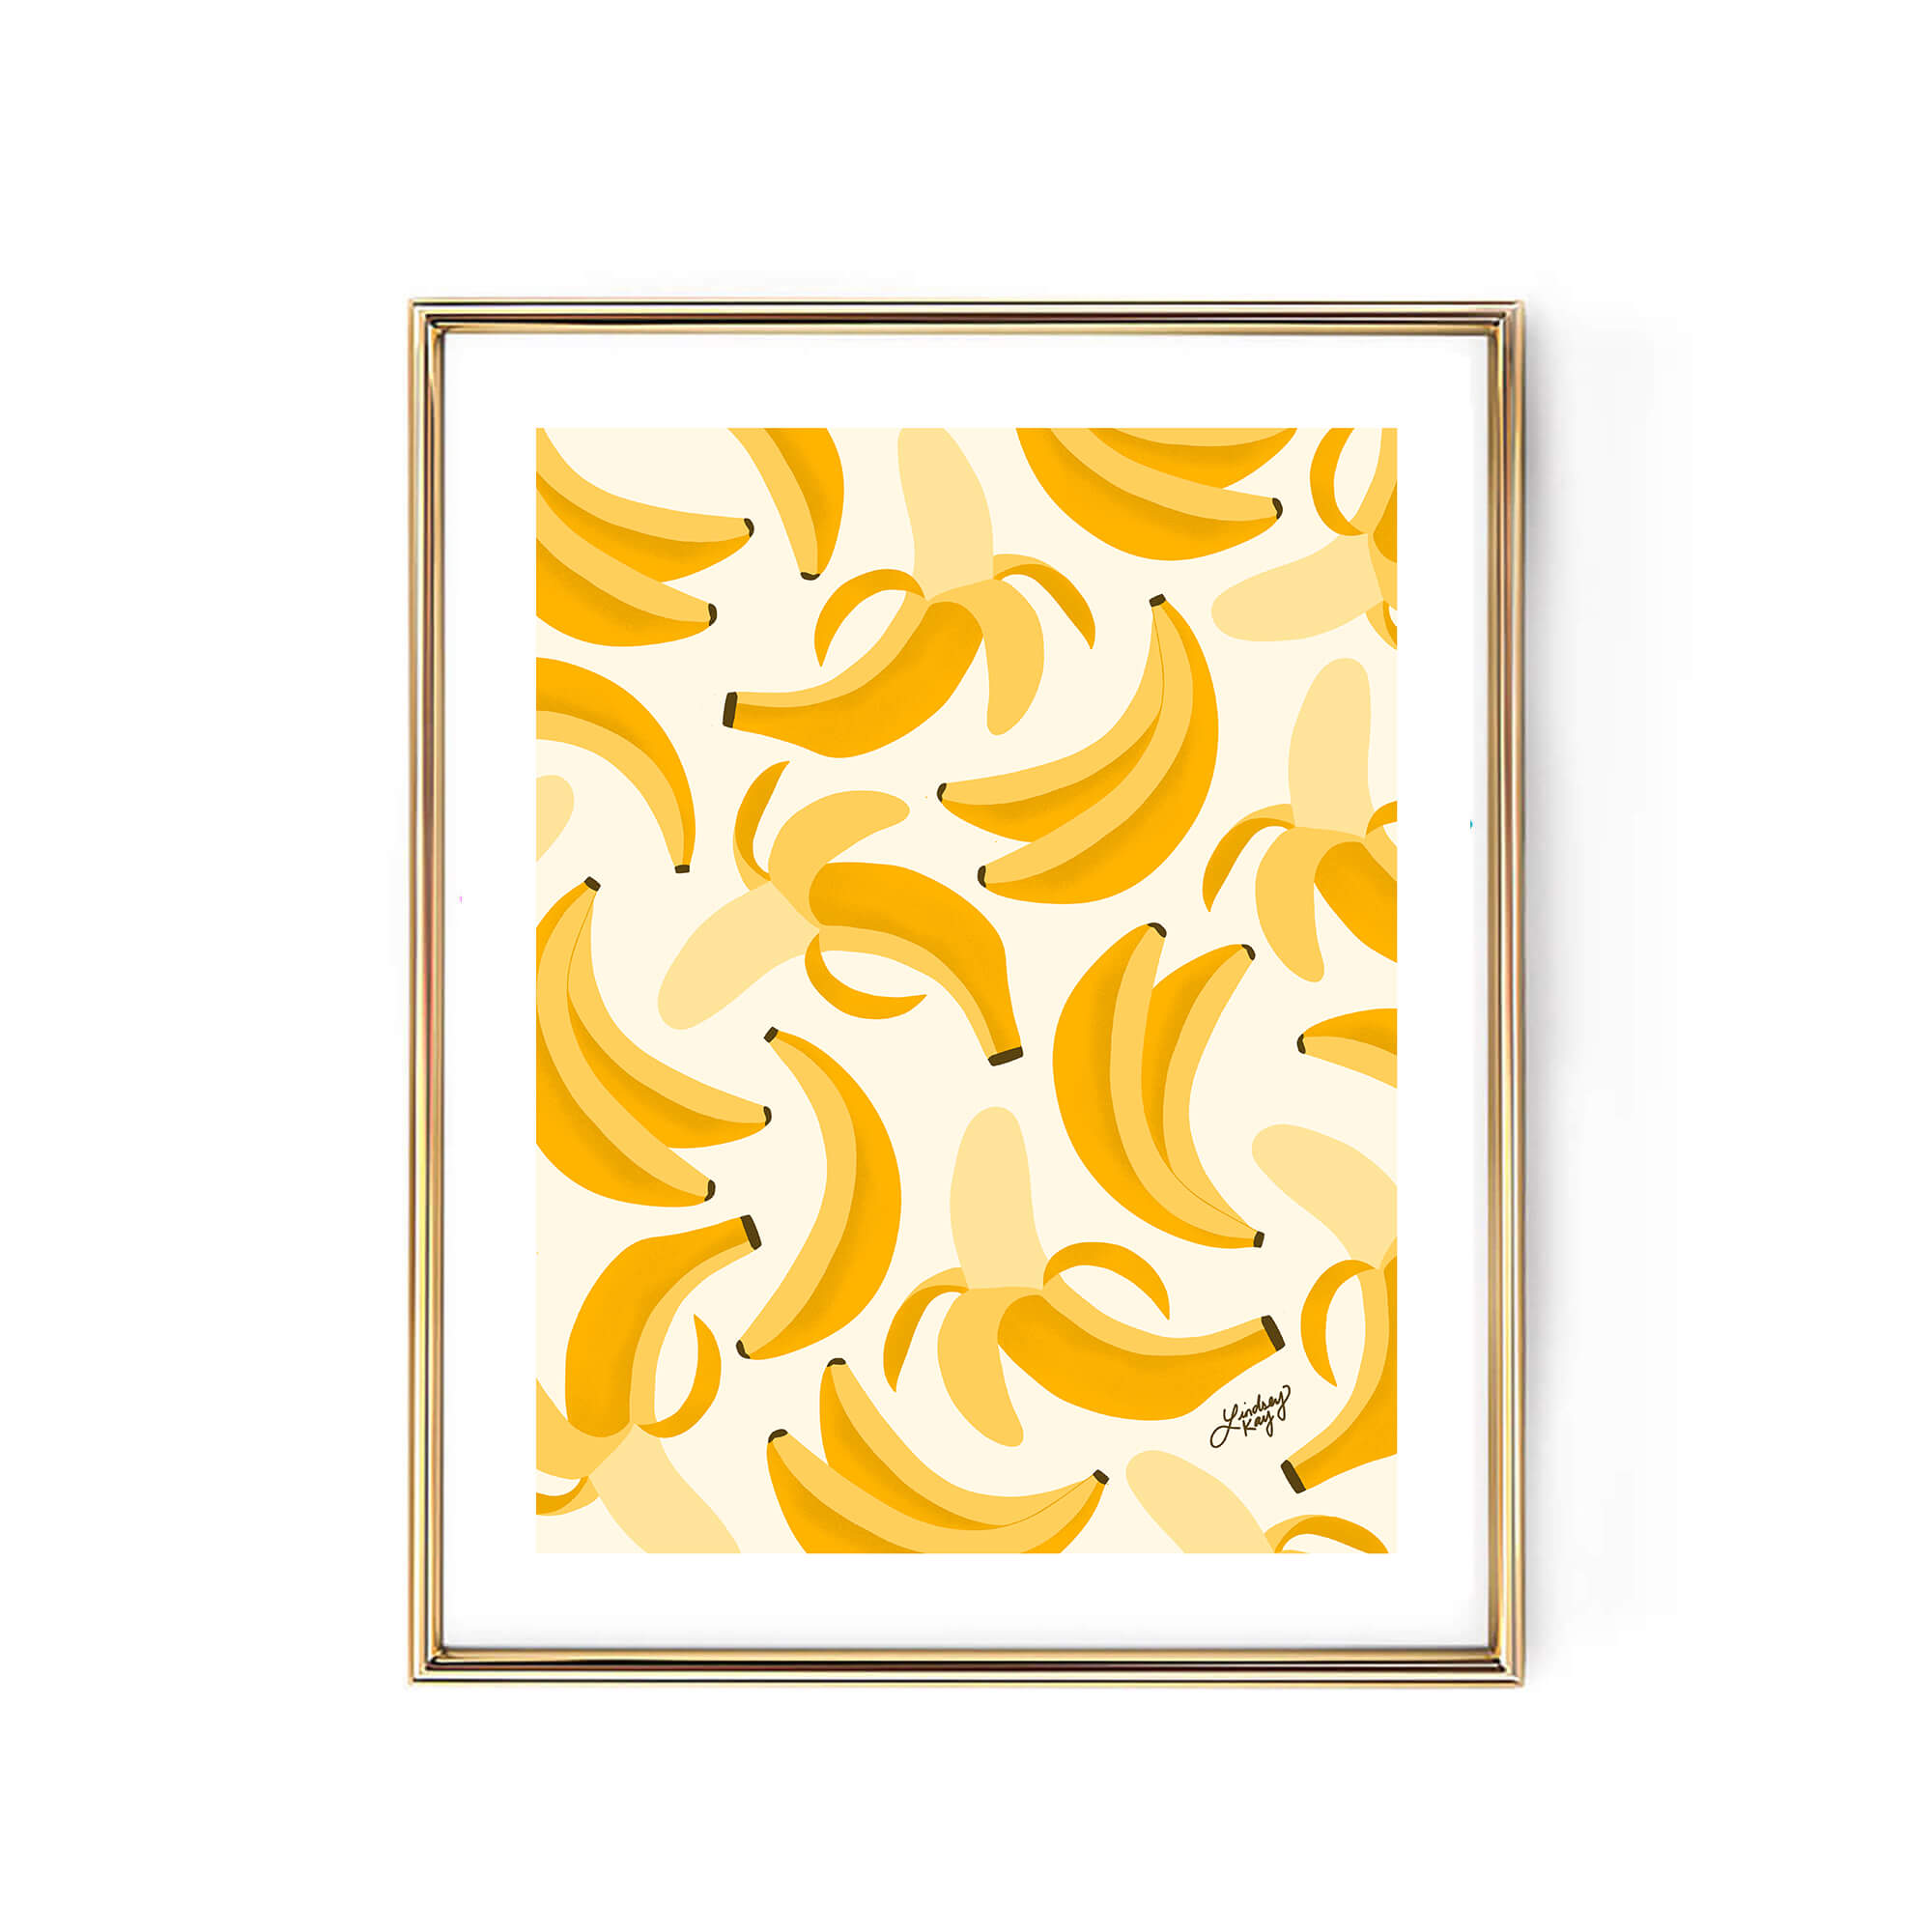 banana bananas illustration drawing art print wall decor poster kitchen-decor cute trendy lindsey kay collective